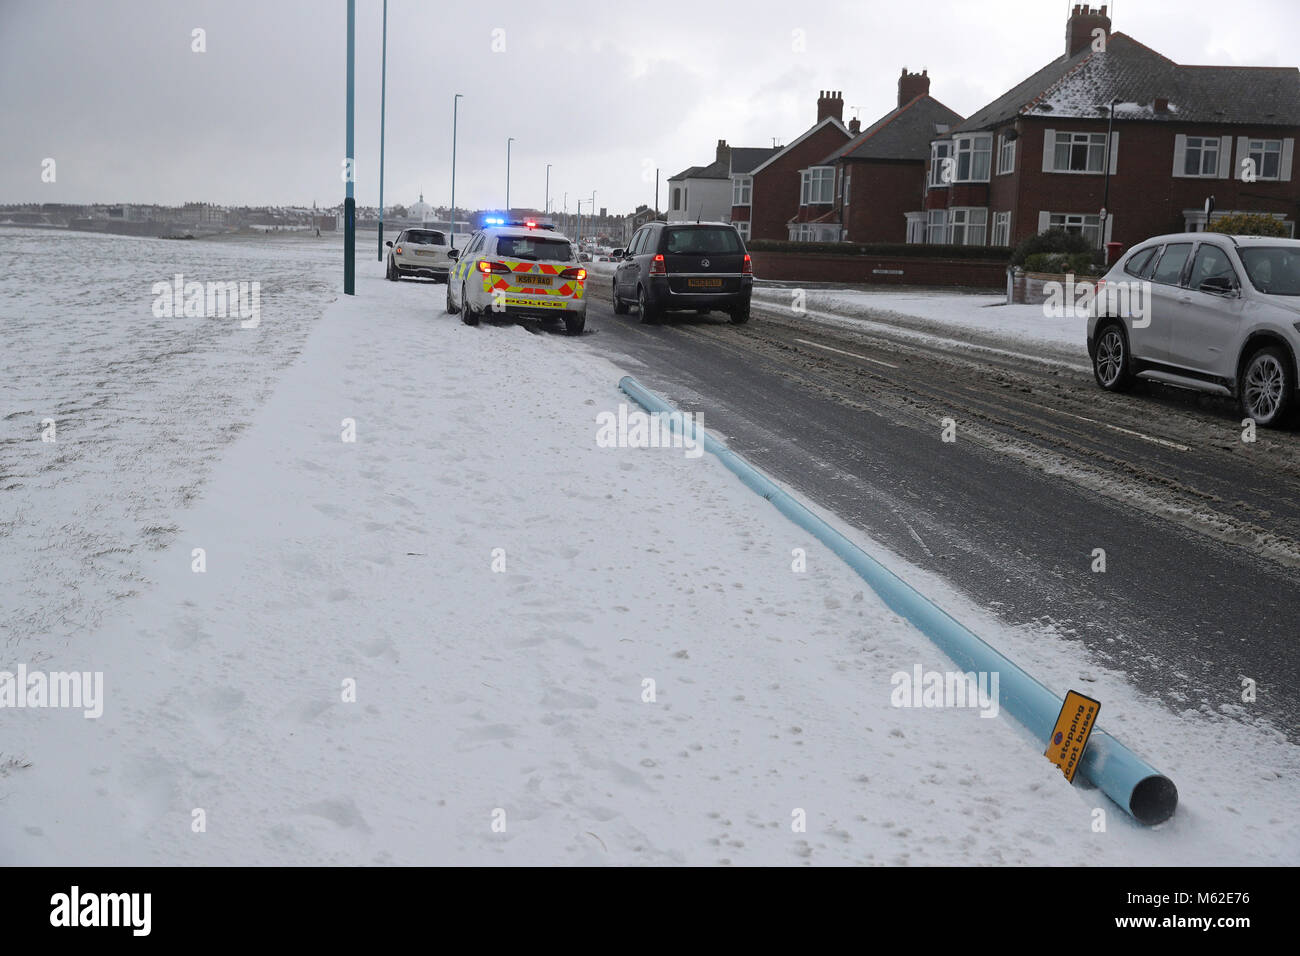 Un lampadaire se trouve sur le sol après qu'il s'emboîte Whitley Bay, North Tyneside, comme des conditions hivernales ont causé plus de misère pour les voyageurs de la nuit. Banque D'Images